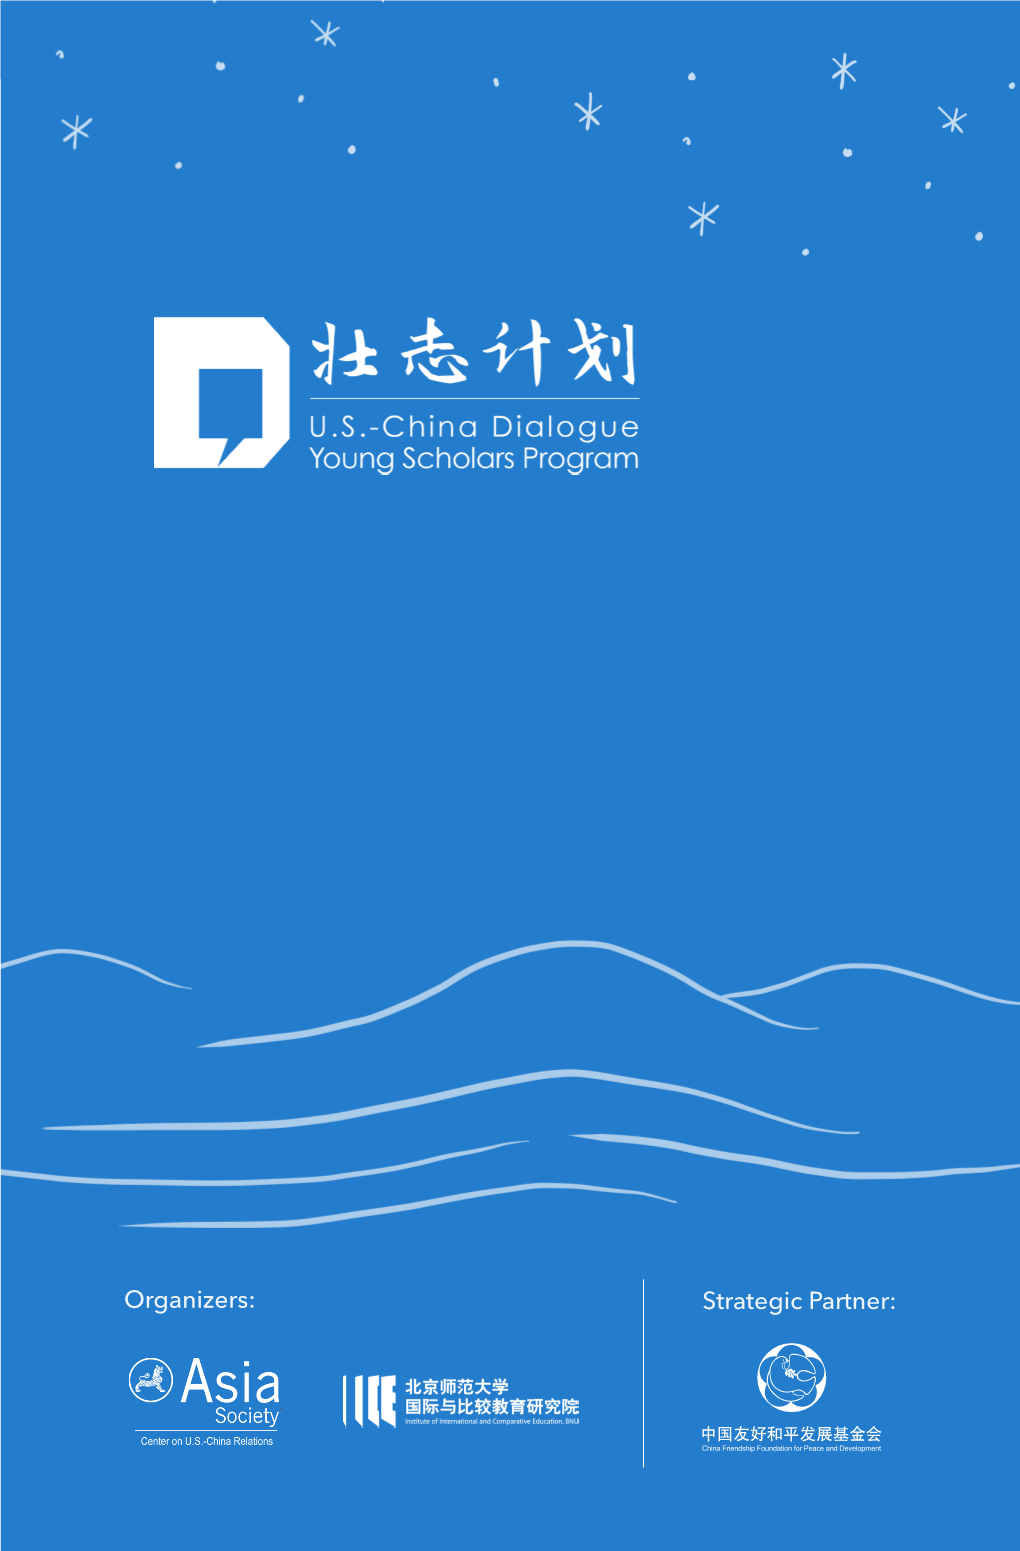 U.S.-China Dialogue Young Scholars Program